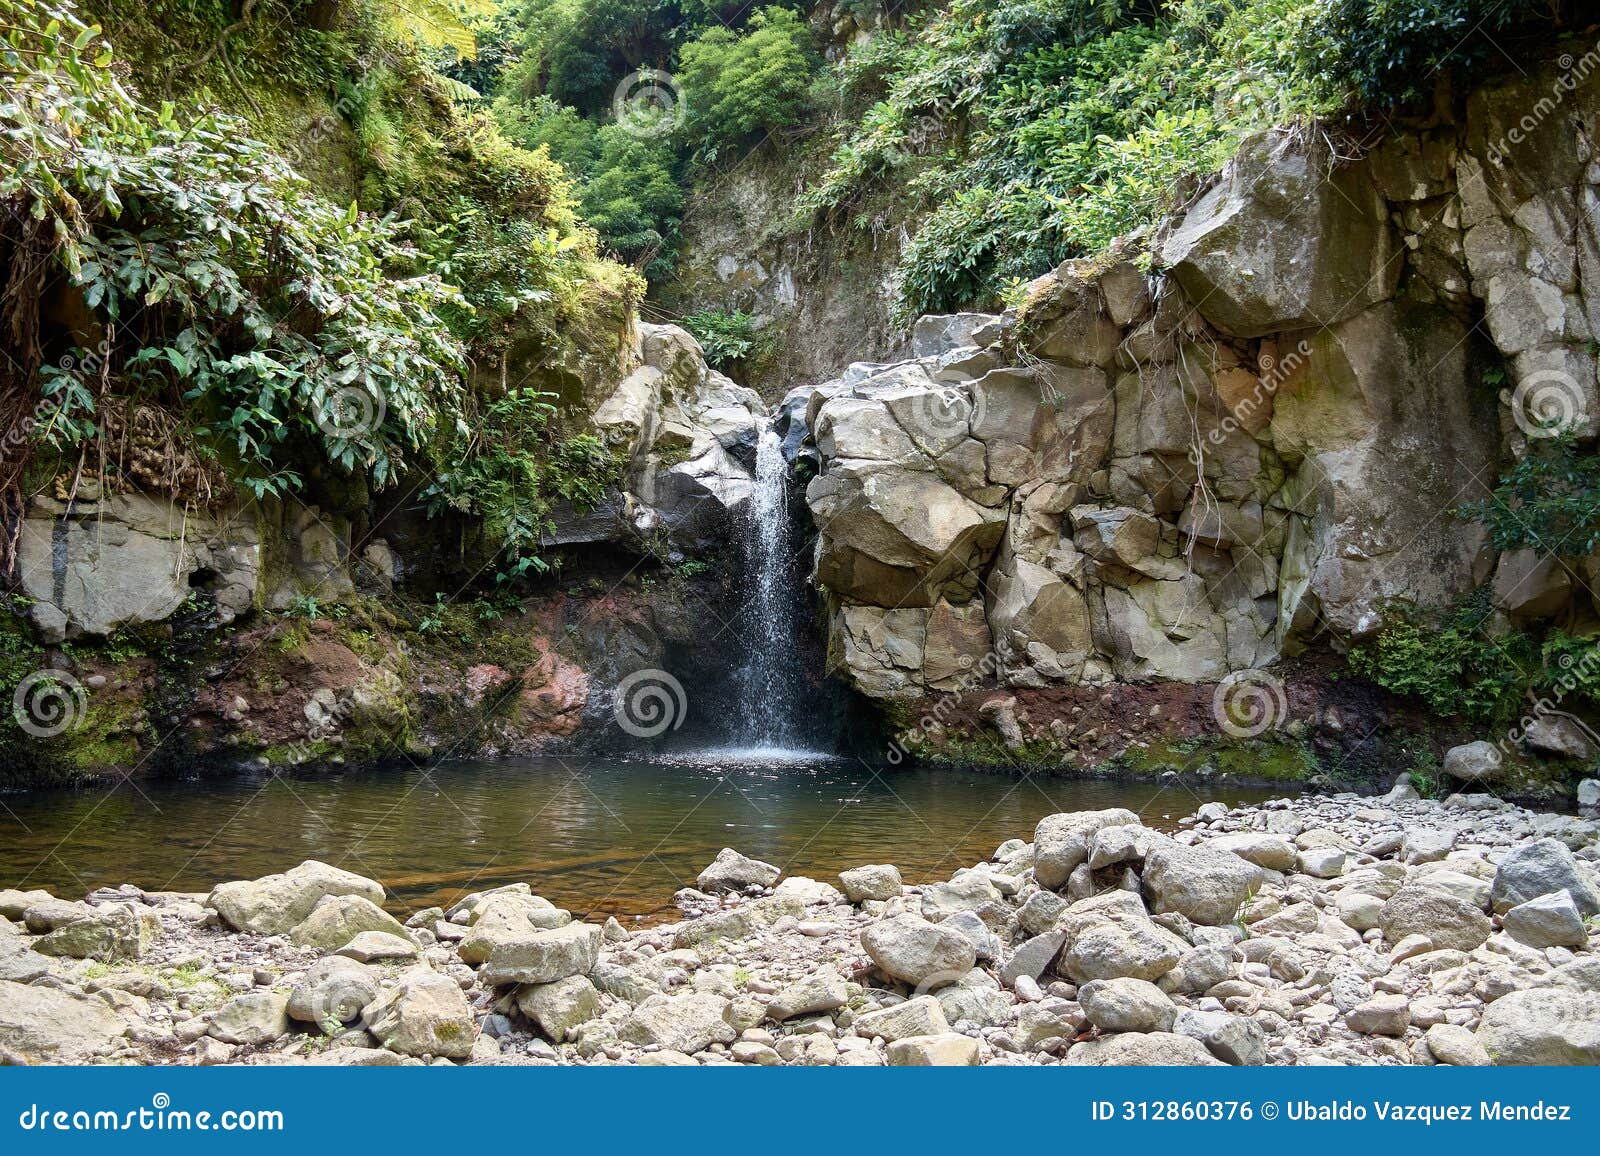 a small waterfall in the parque natural da ribeira dos caldeiroes, sao miguel, azores, portugal